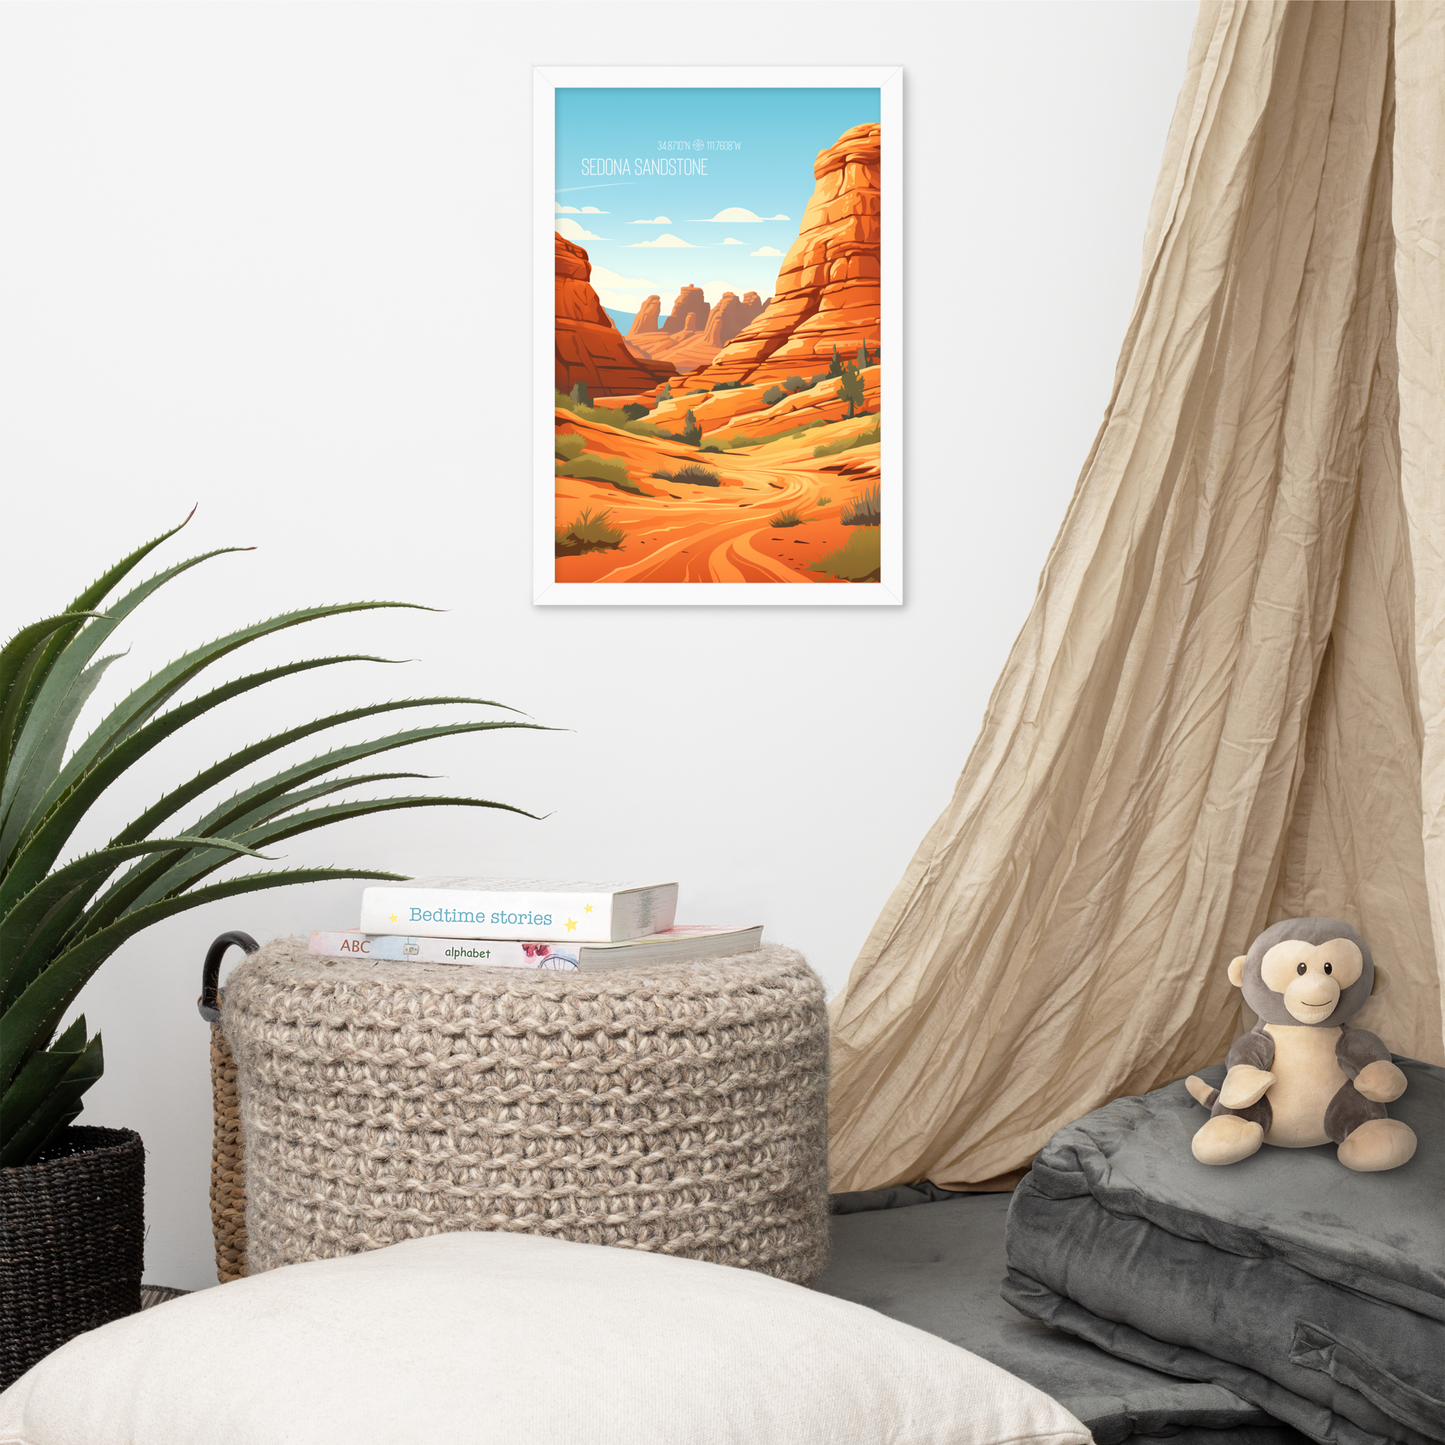 Arizona - Sedona Sandstone (Framed poster)